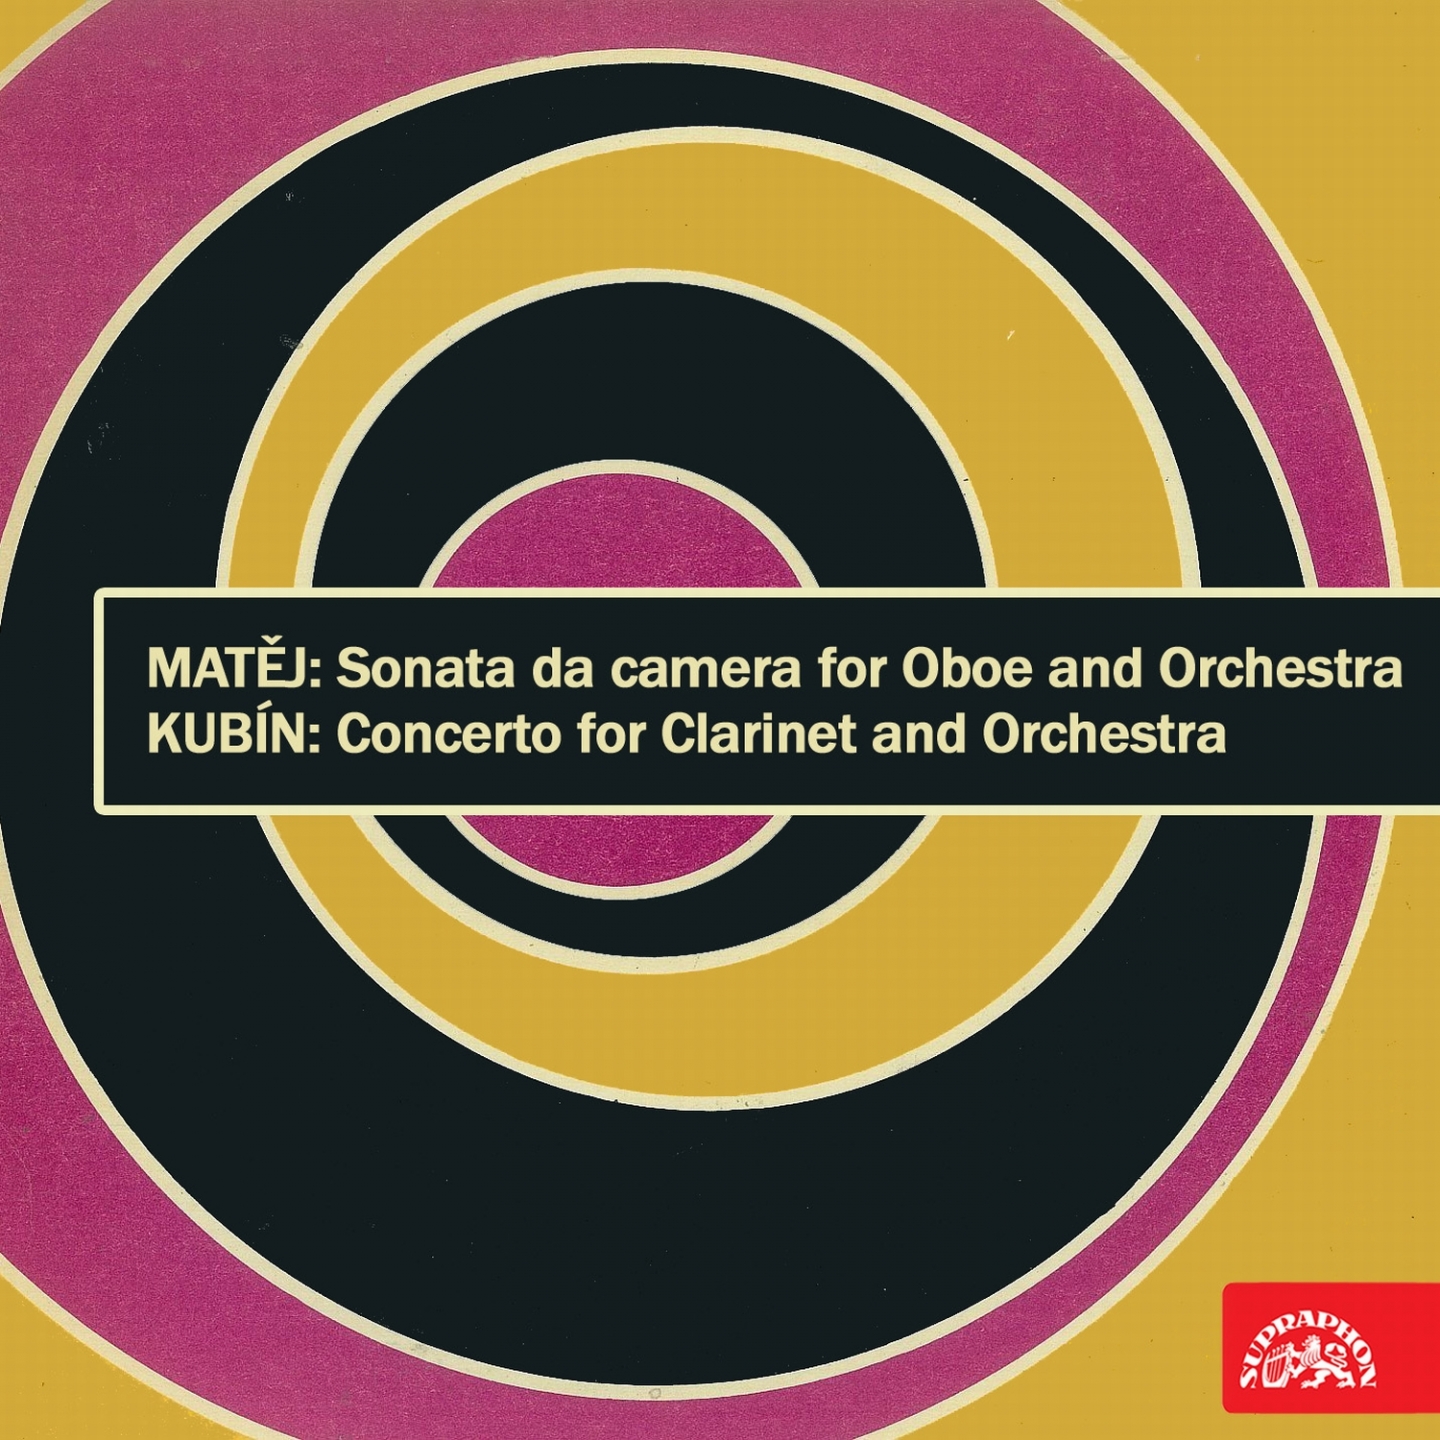 Mate j: Sonata da camera for Oboe and Orchestra  Kubi n: Clarinet Concerto